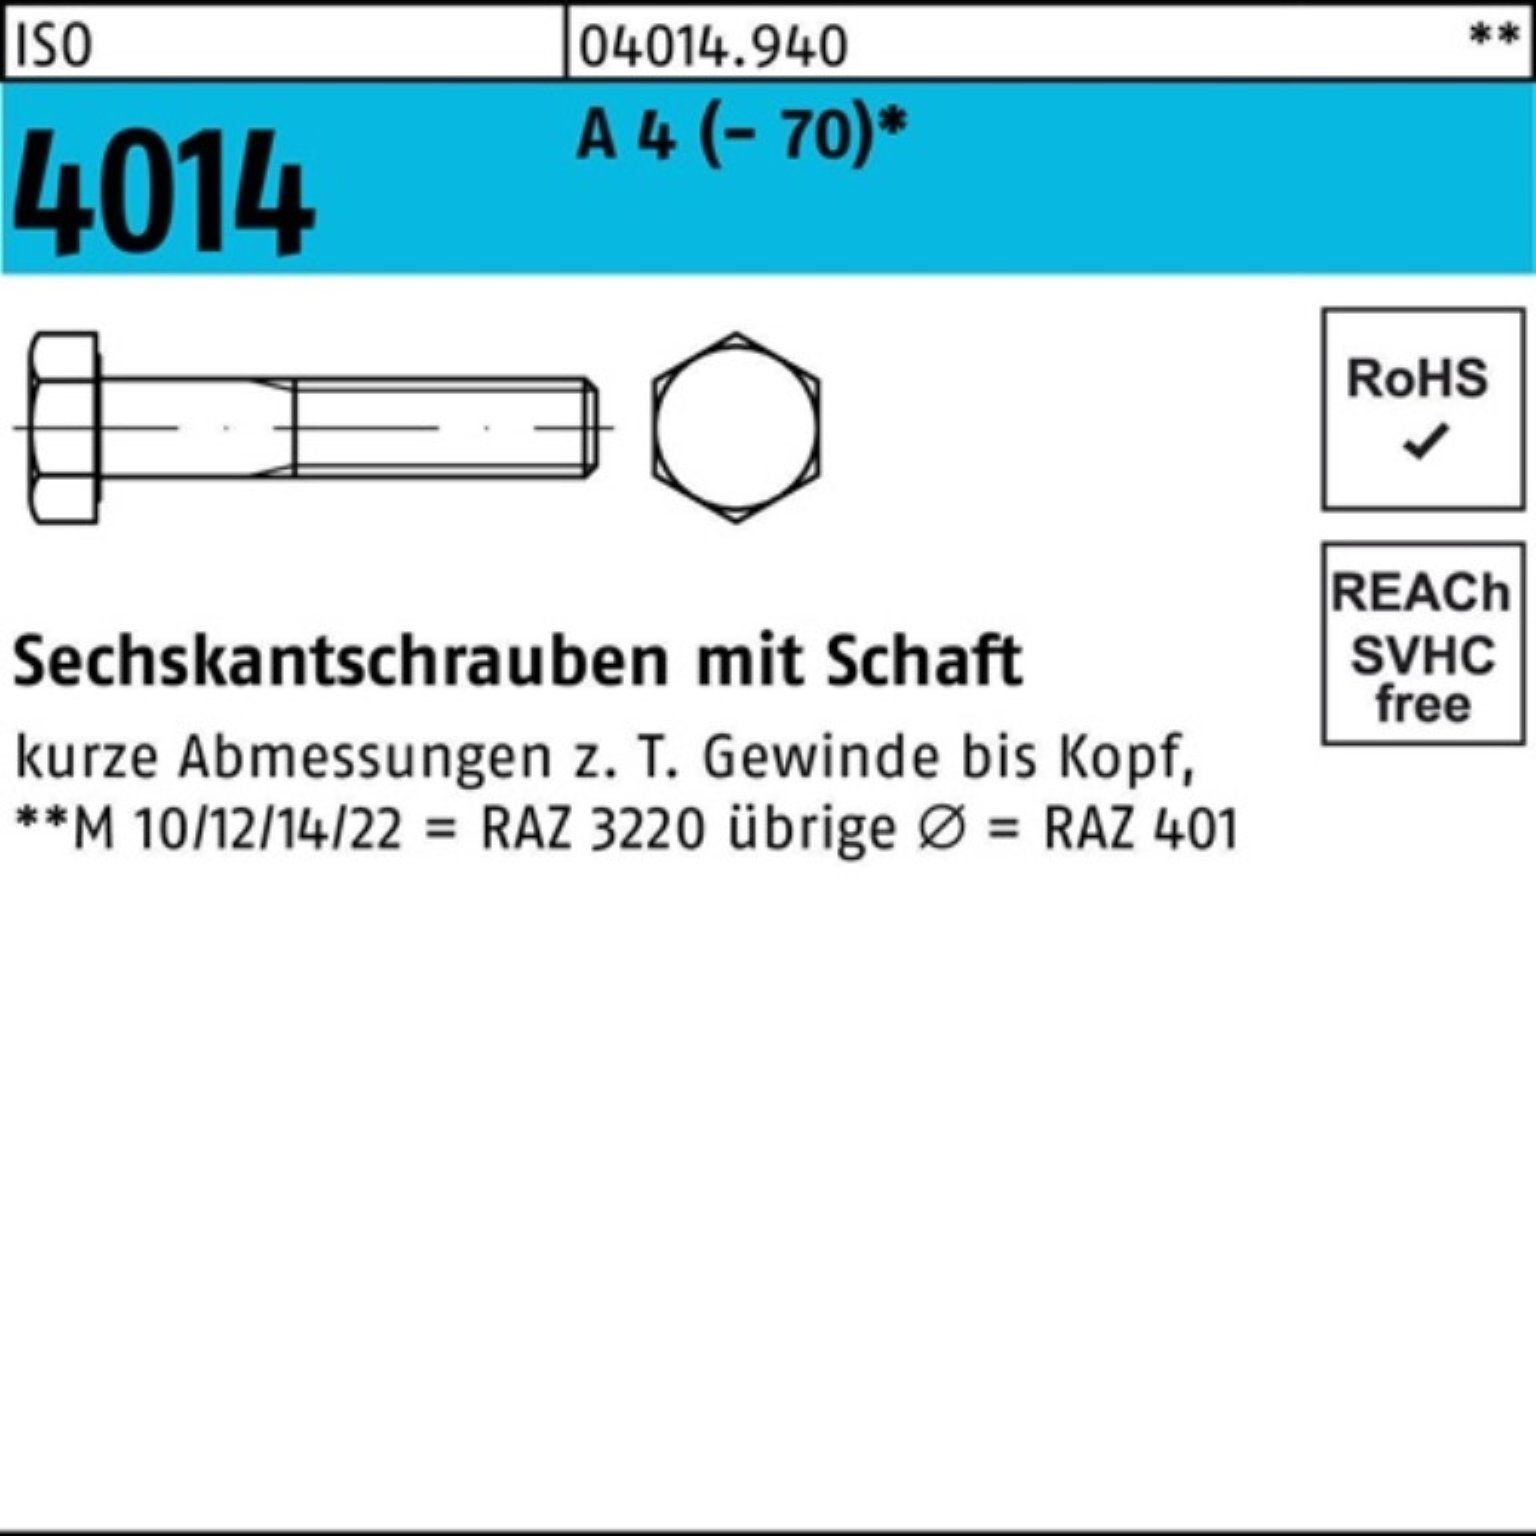 Bufab Sechskantschraube 100er Pack 110 Schaft ISO St 1 A 4 (70) M18x 4014 Sechskantschraube